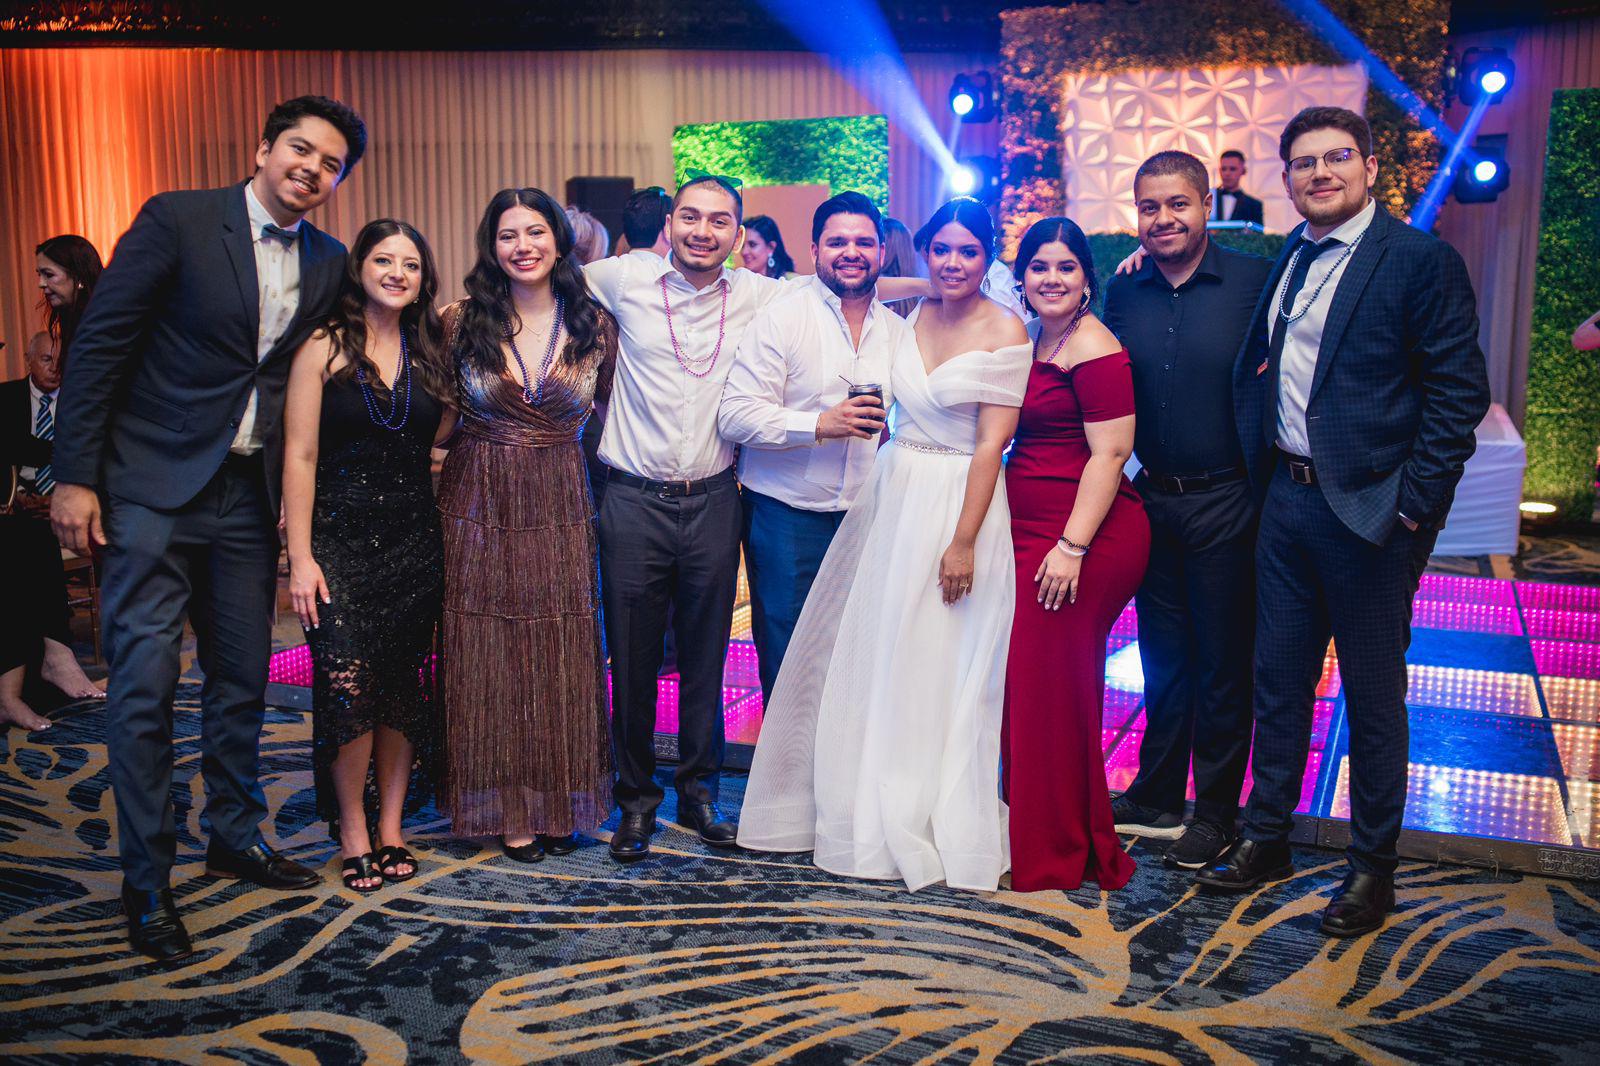 La boda de Elisa Rodríguez y André Calderón